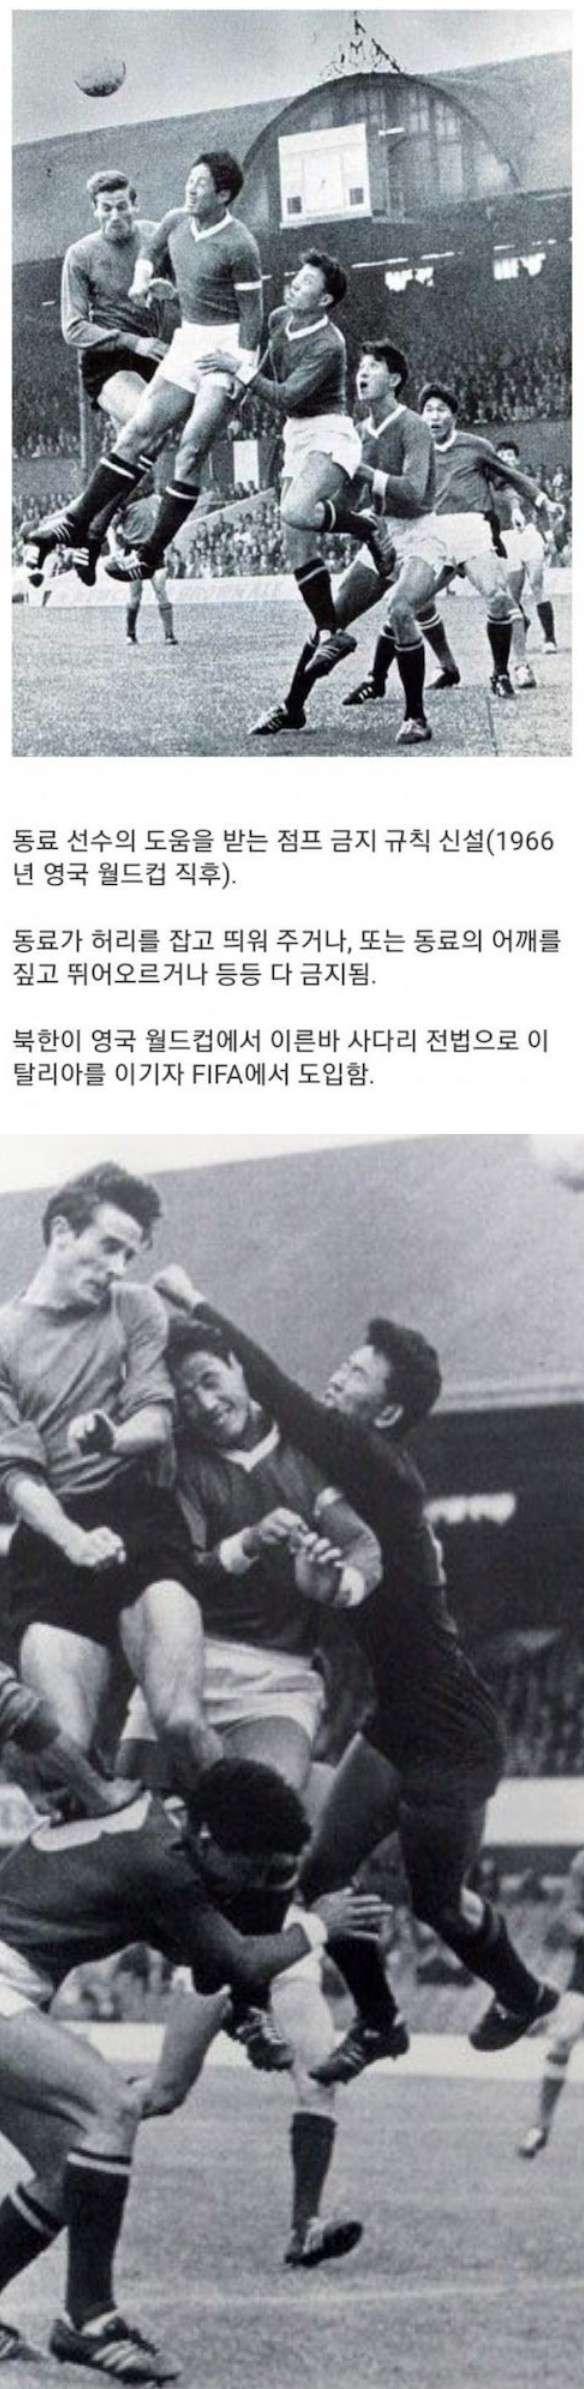 북한 때문에 금지된 축구 기술